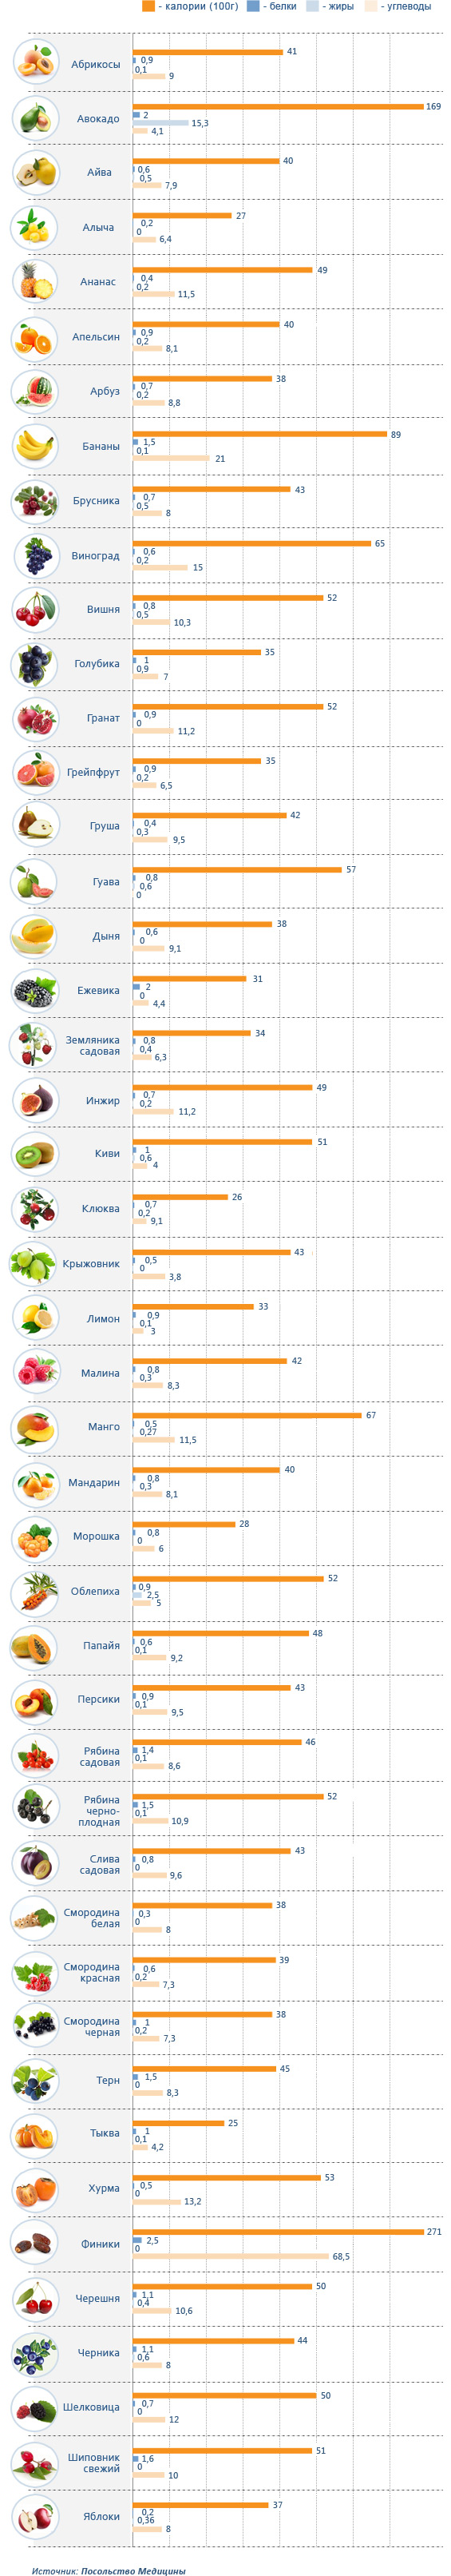 Инфографика из исходной таблицы - Калорийность: фрукты